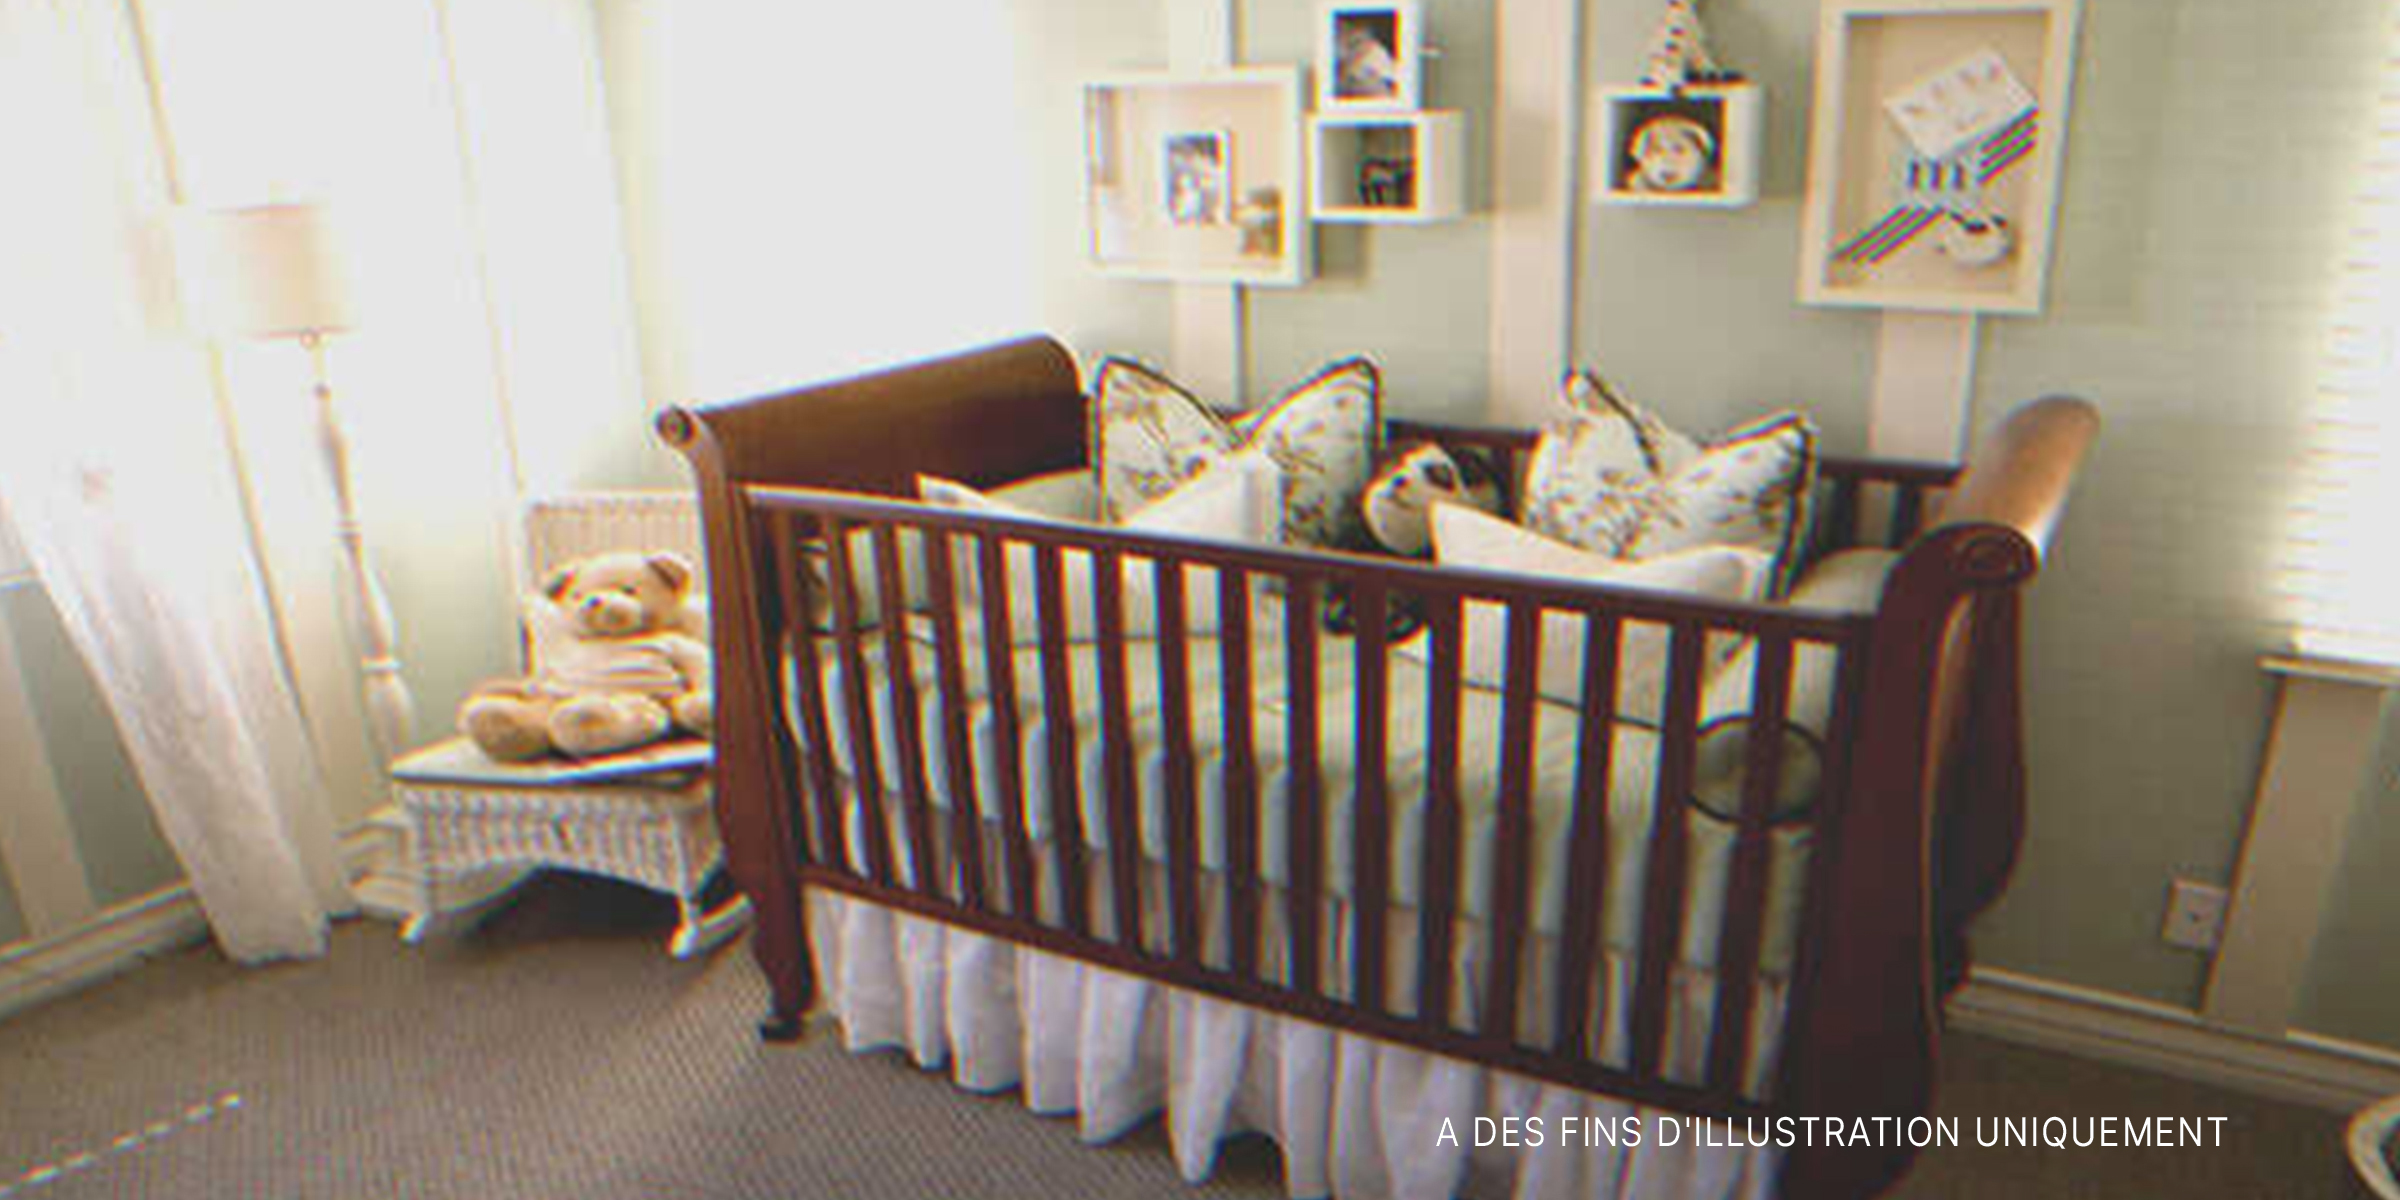 Un berceau dans une chambre d'enfant | Source : Shutterstock